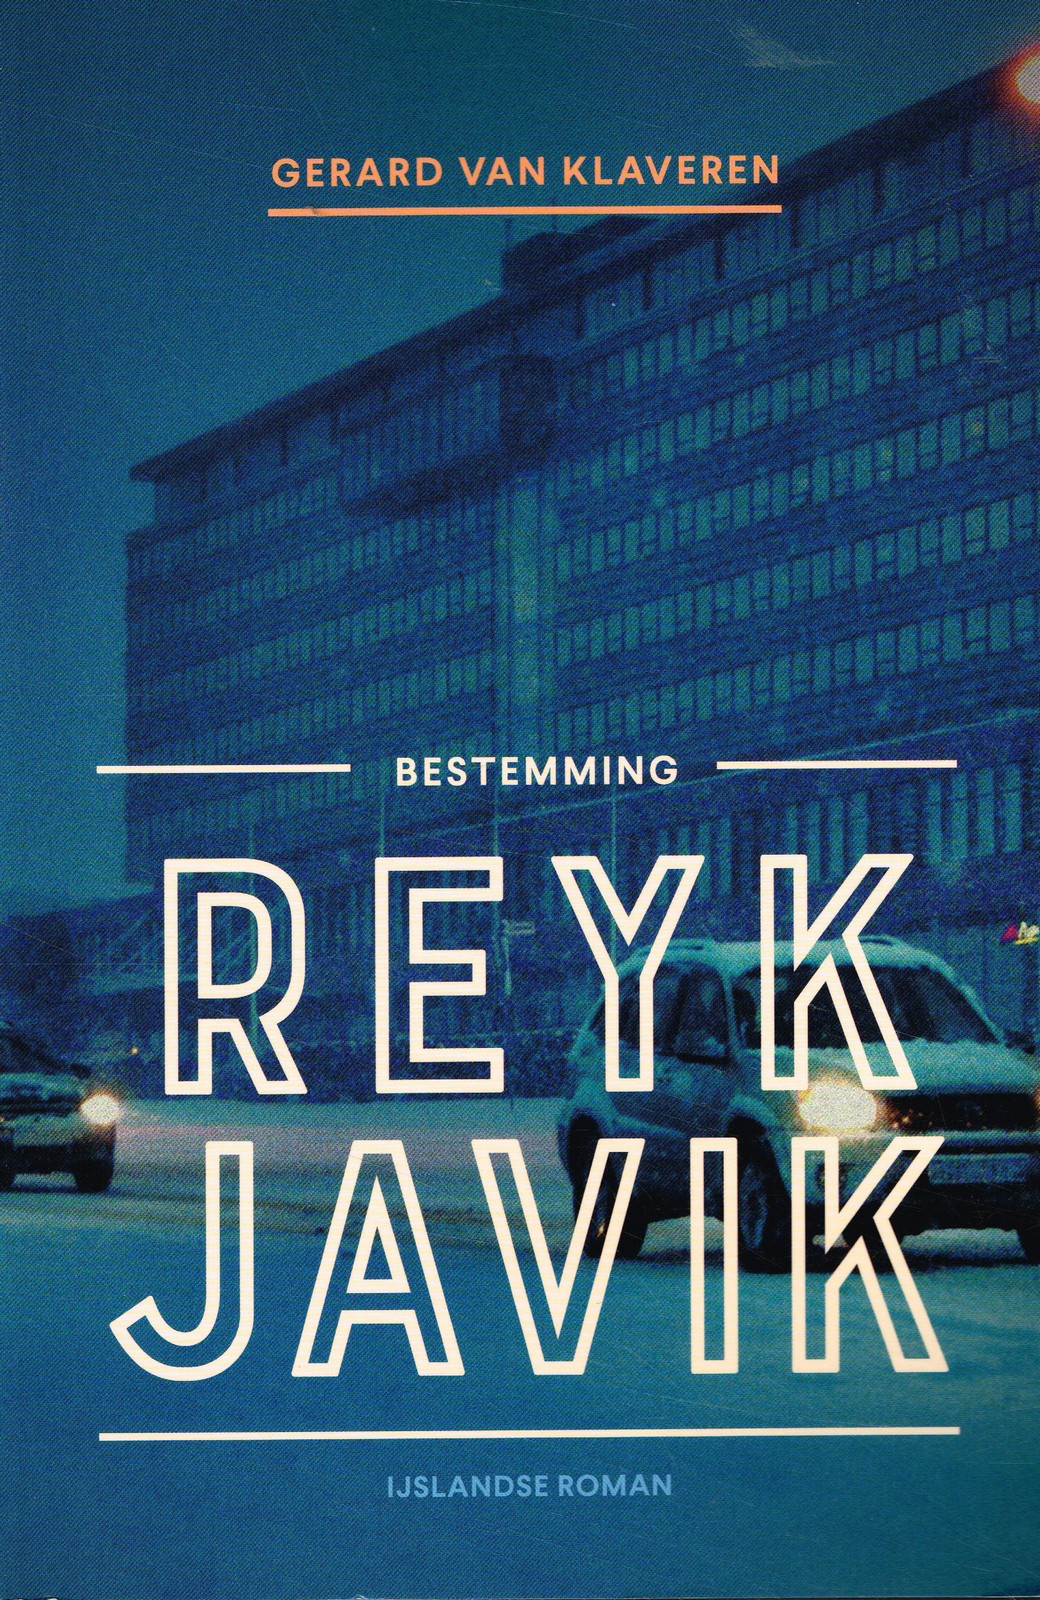 Bestemming Reykjavik - 9789056157609 - Gerard van Klaveren